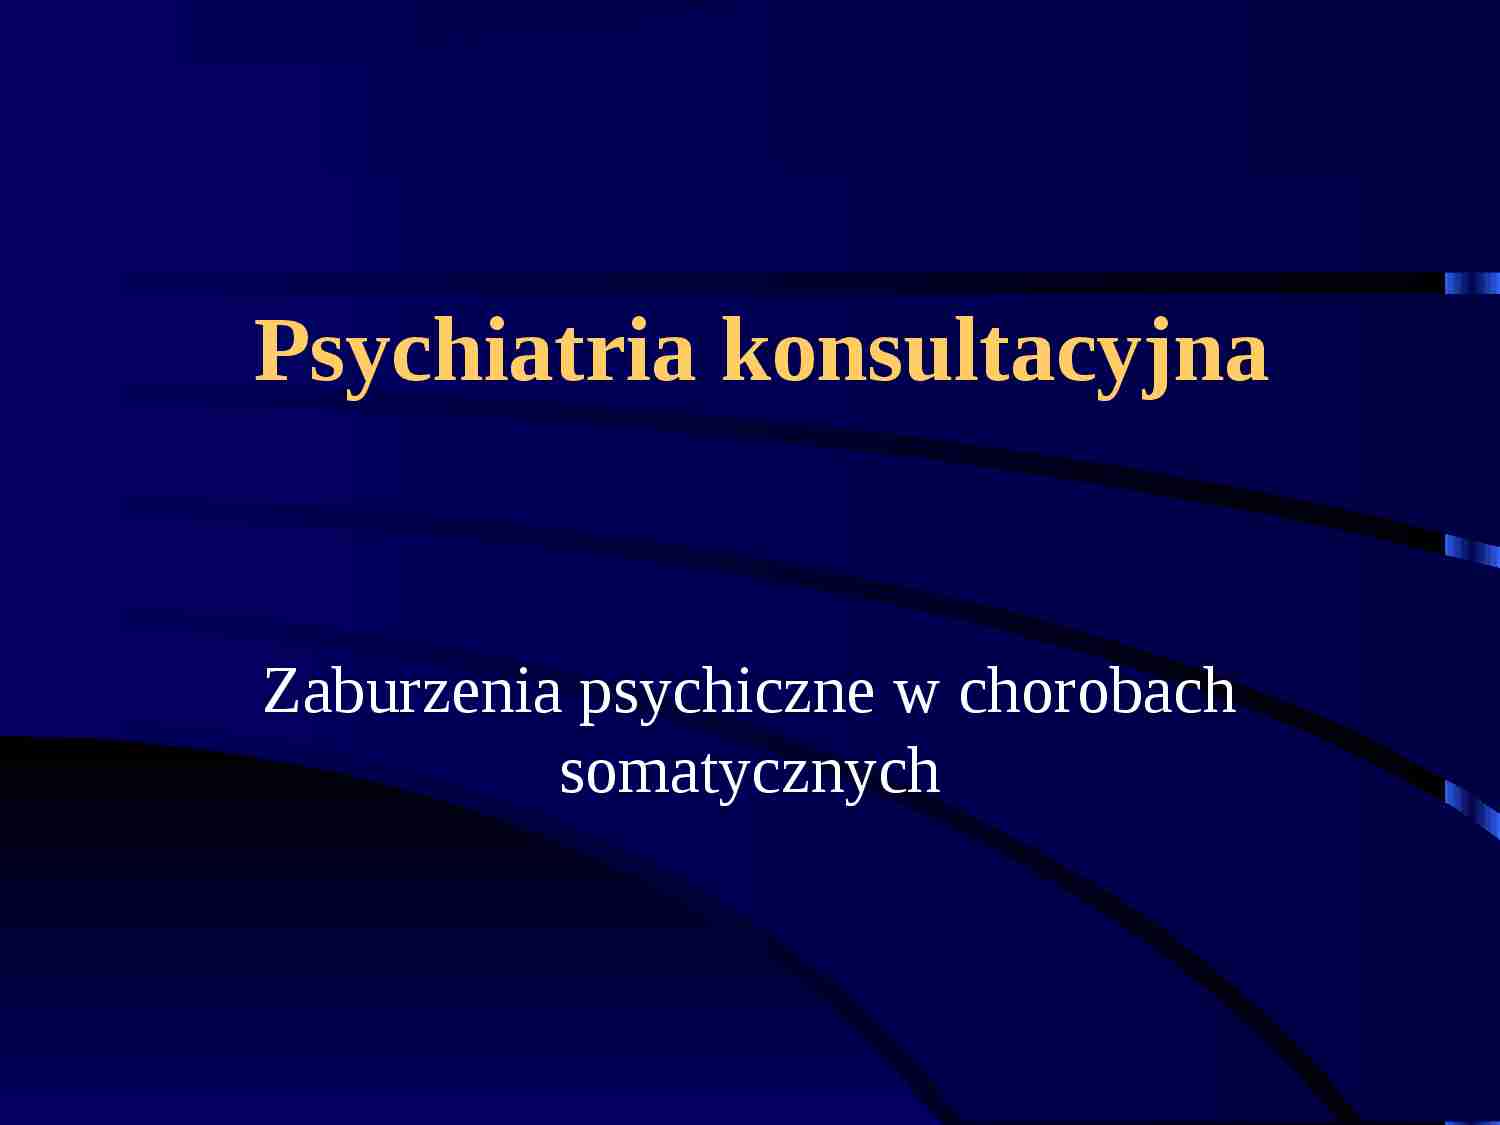 Psychiatria konsultacyjna - strona 1